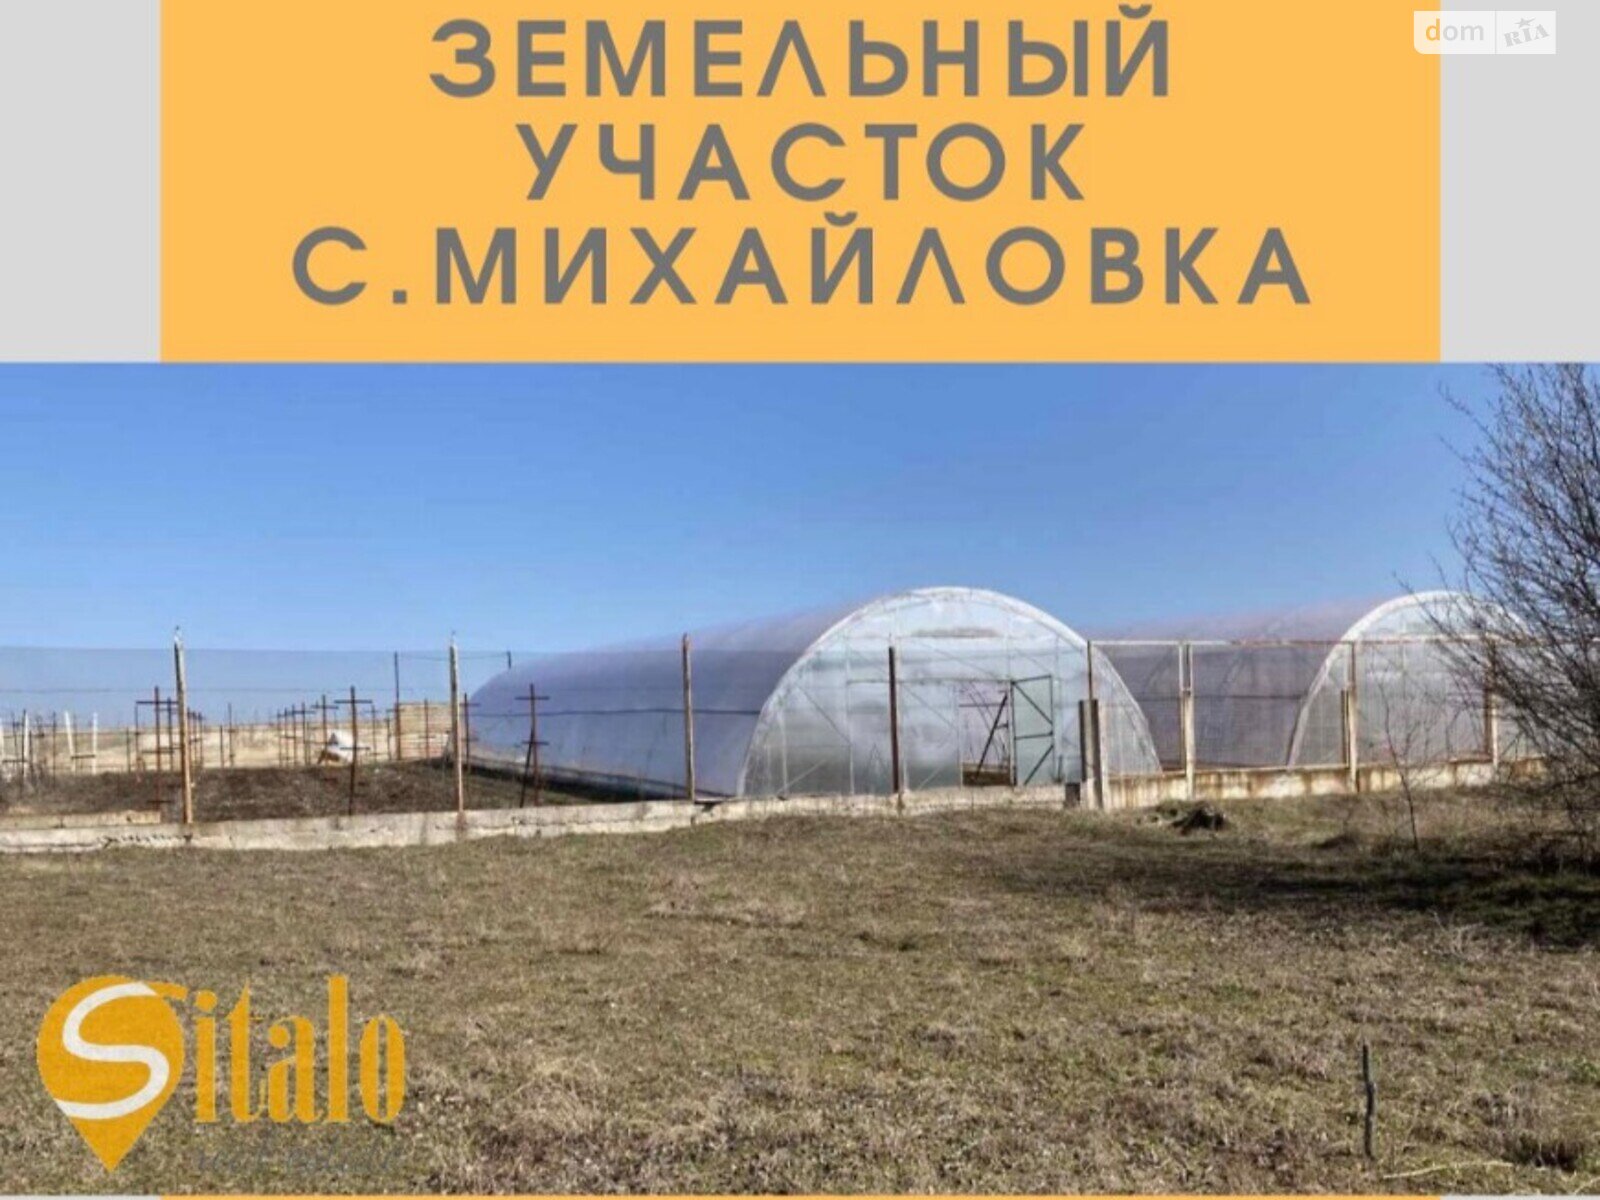 Земельный участок сельскохозяйственного назначения в Михайловке, площадь 64 сотки фото 1